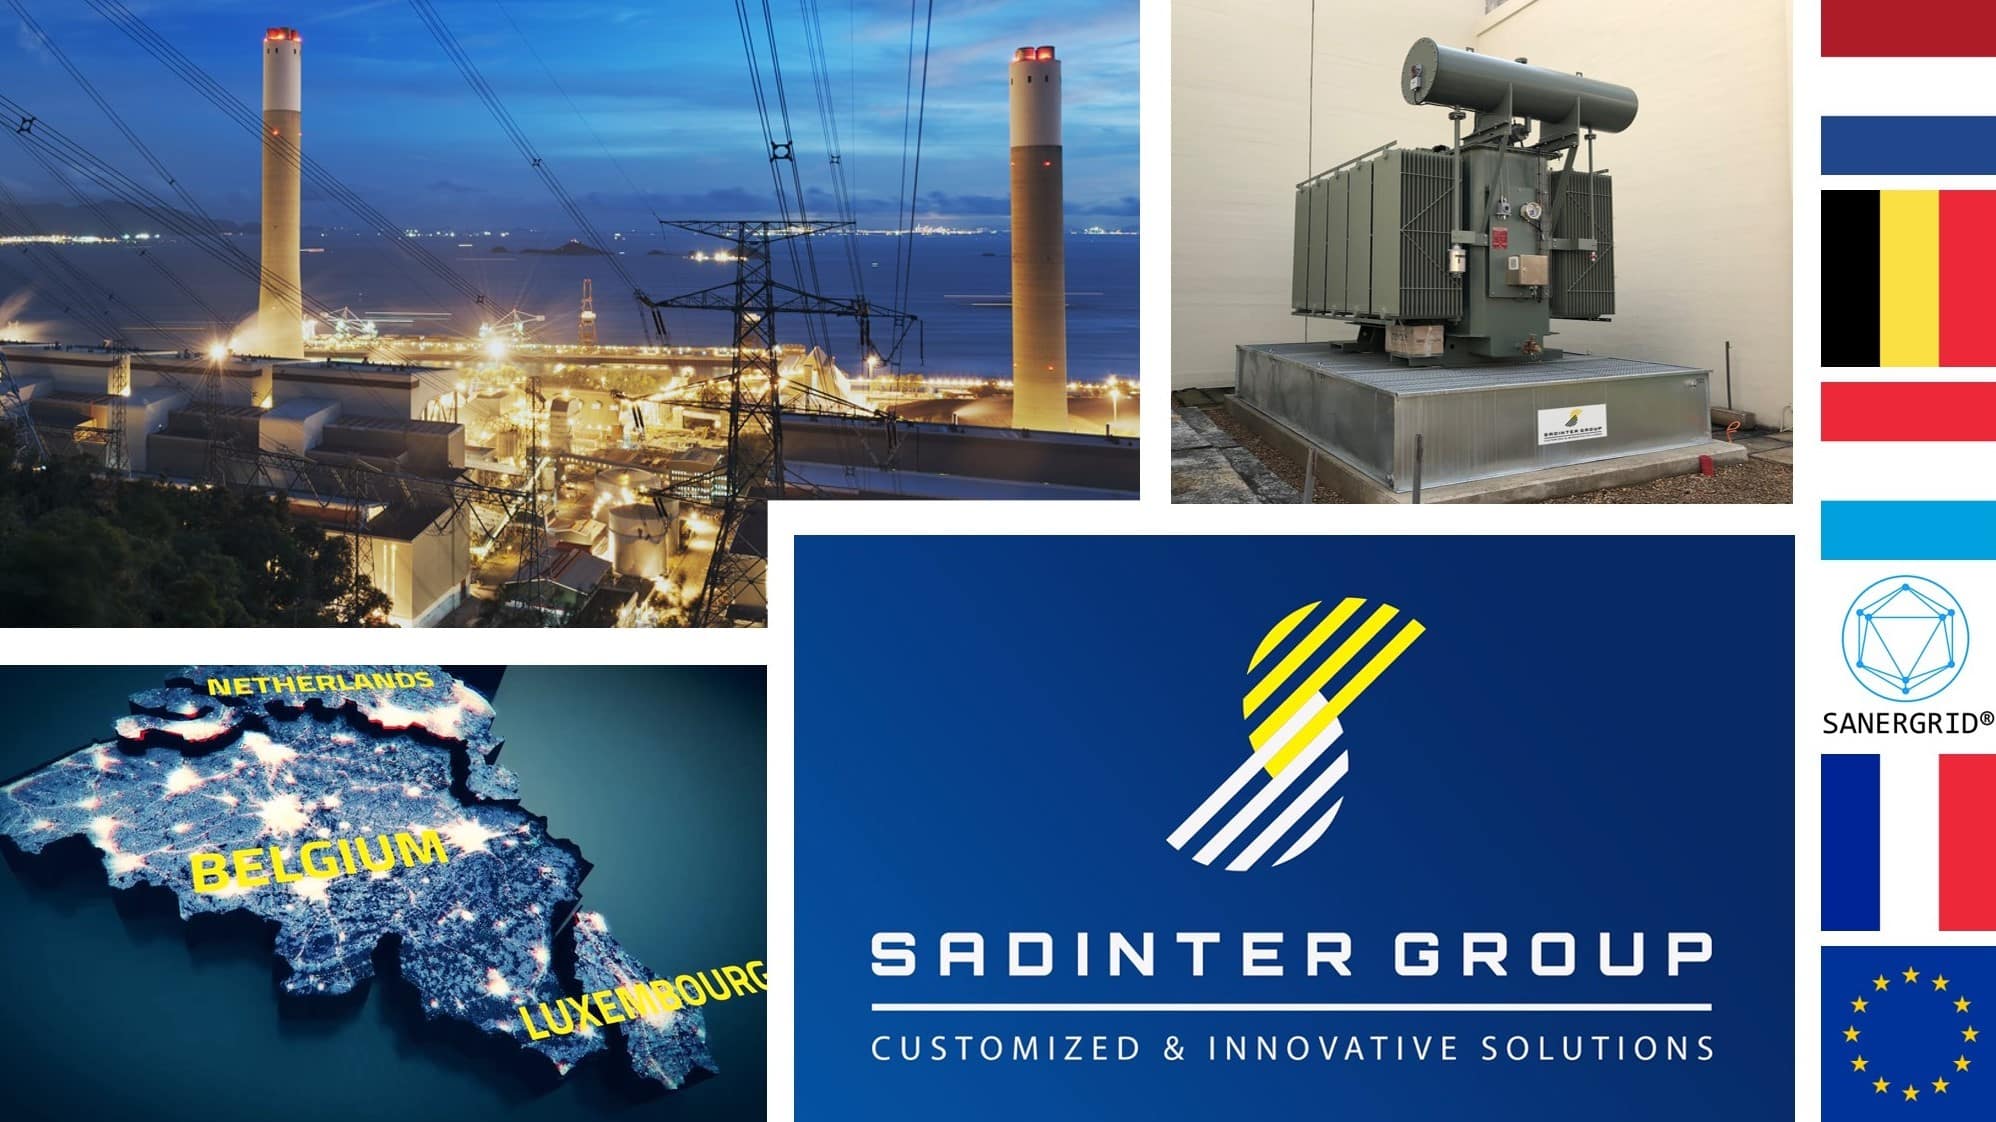 SADINTER distributeur solutions gestion des risques industrie électrique SANERGRID